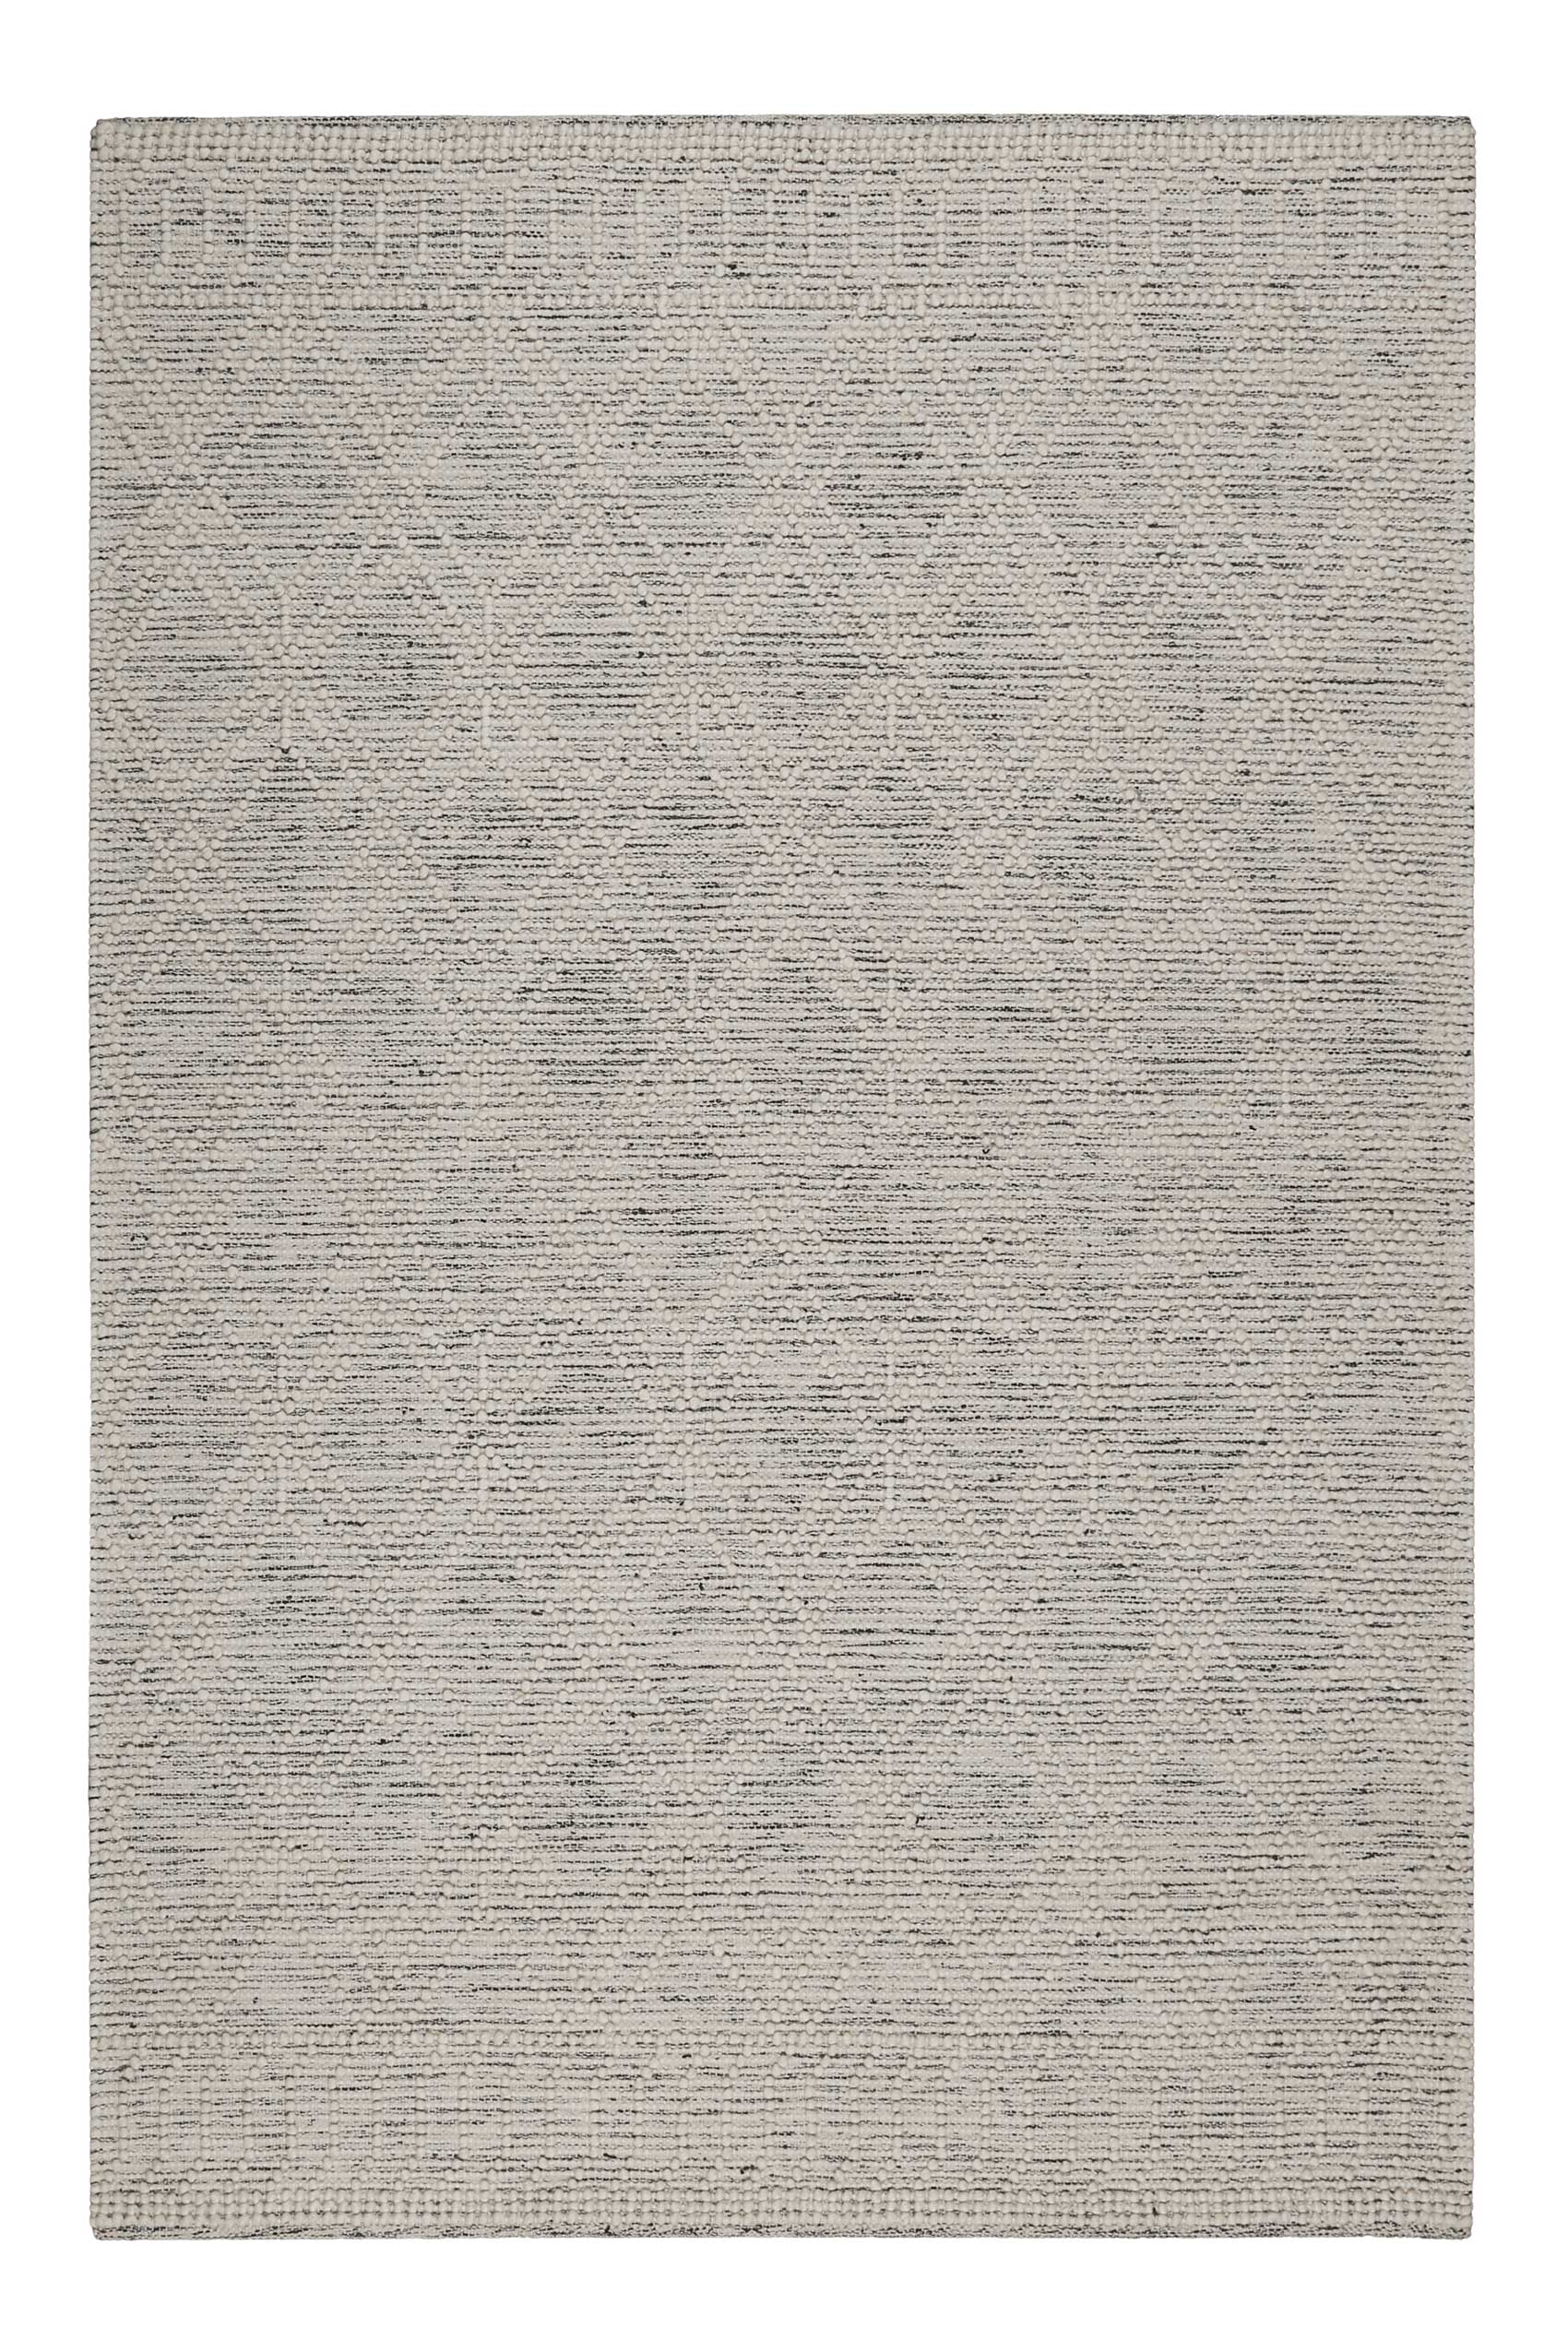 Esprit Teppich handgewebt Weiß Hellgrau aus Wolle » Ivy « - Ansicht 1